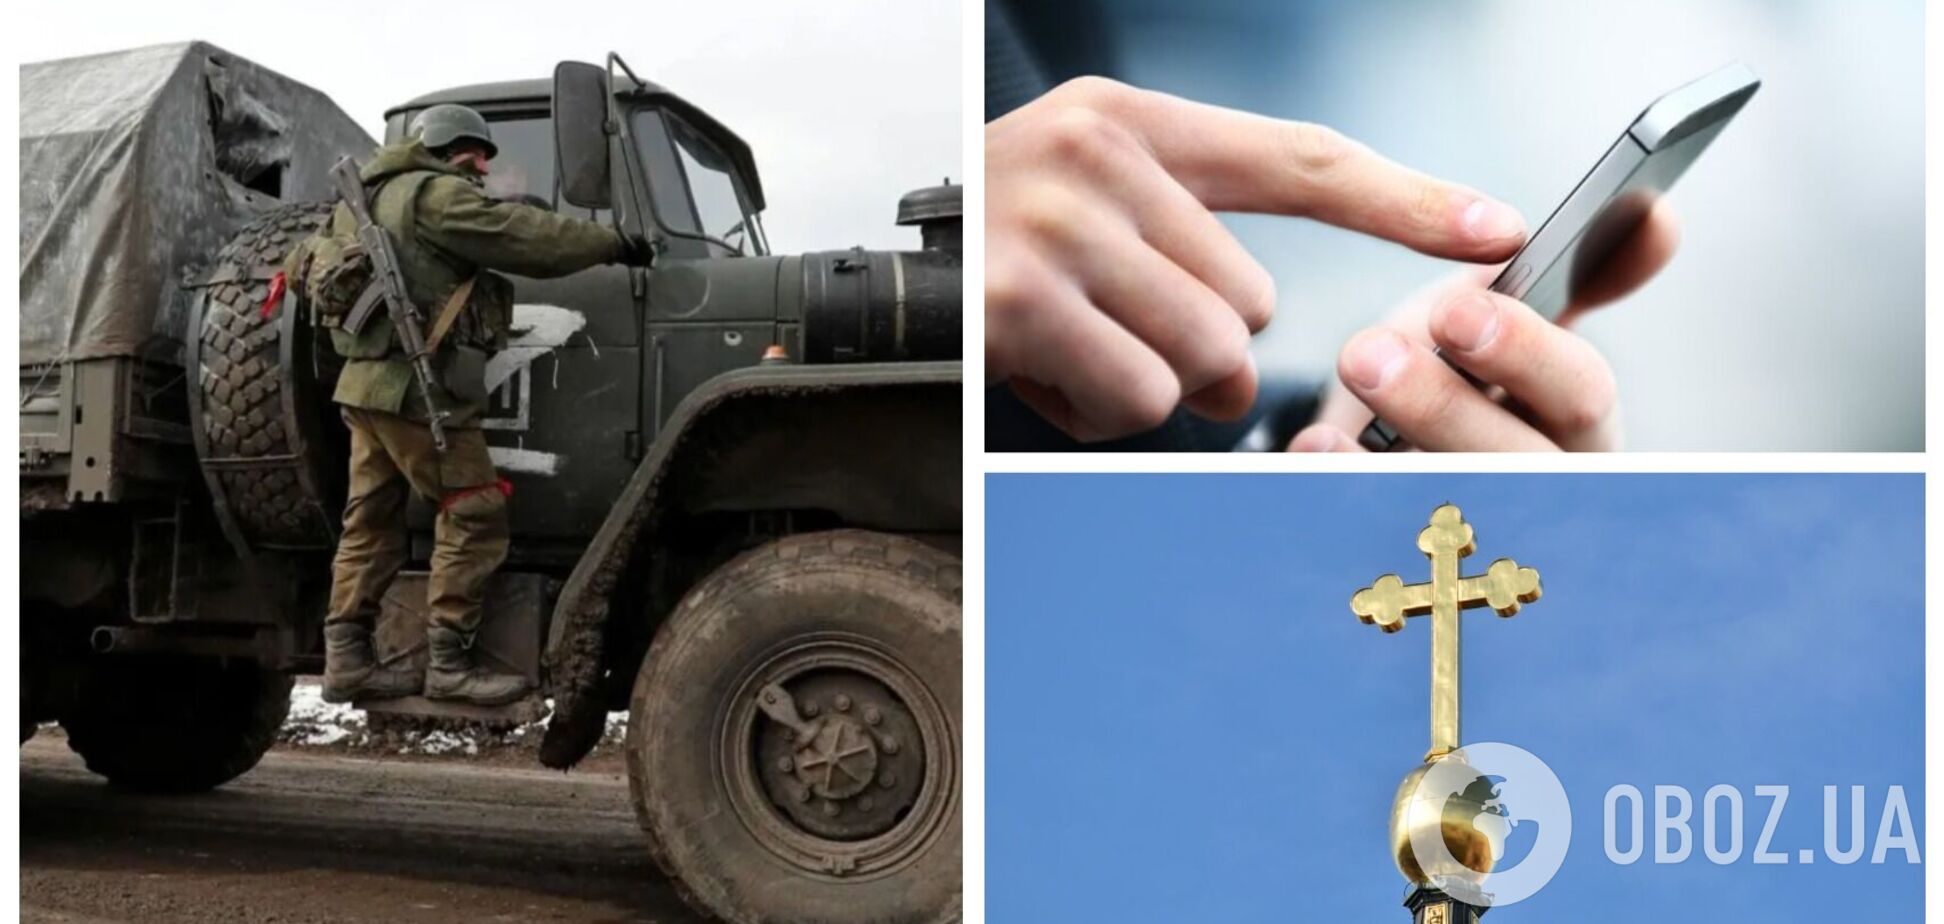 У Сєвєродонецьку священник 'зливав' окупантам дані про місця дислокації та озброєння ЗСУ